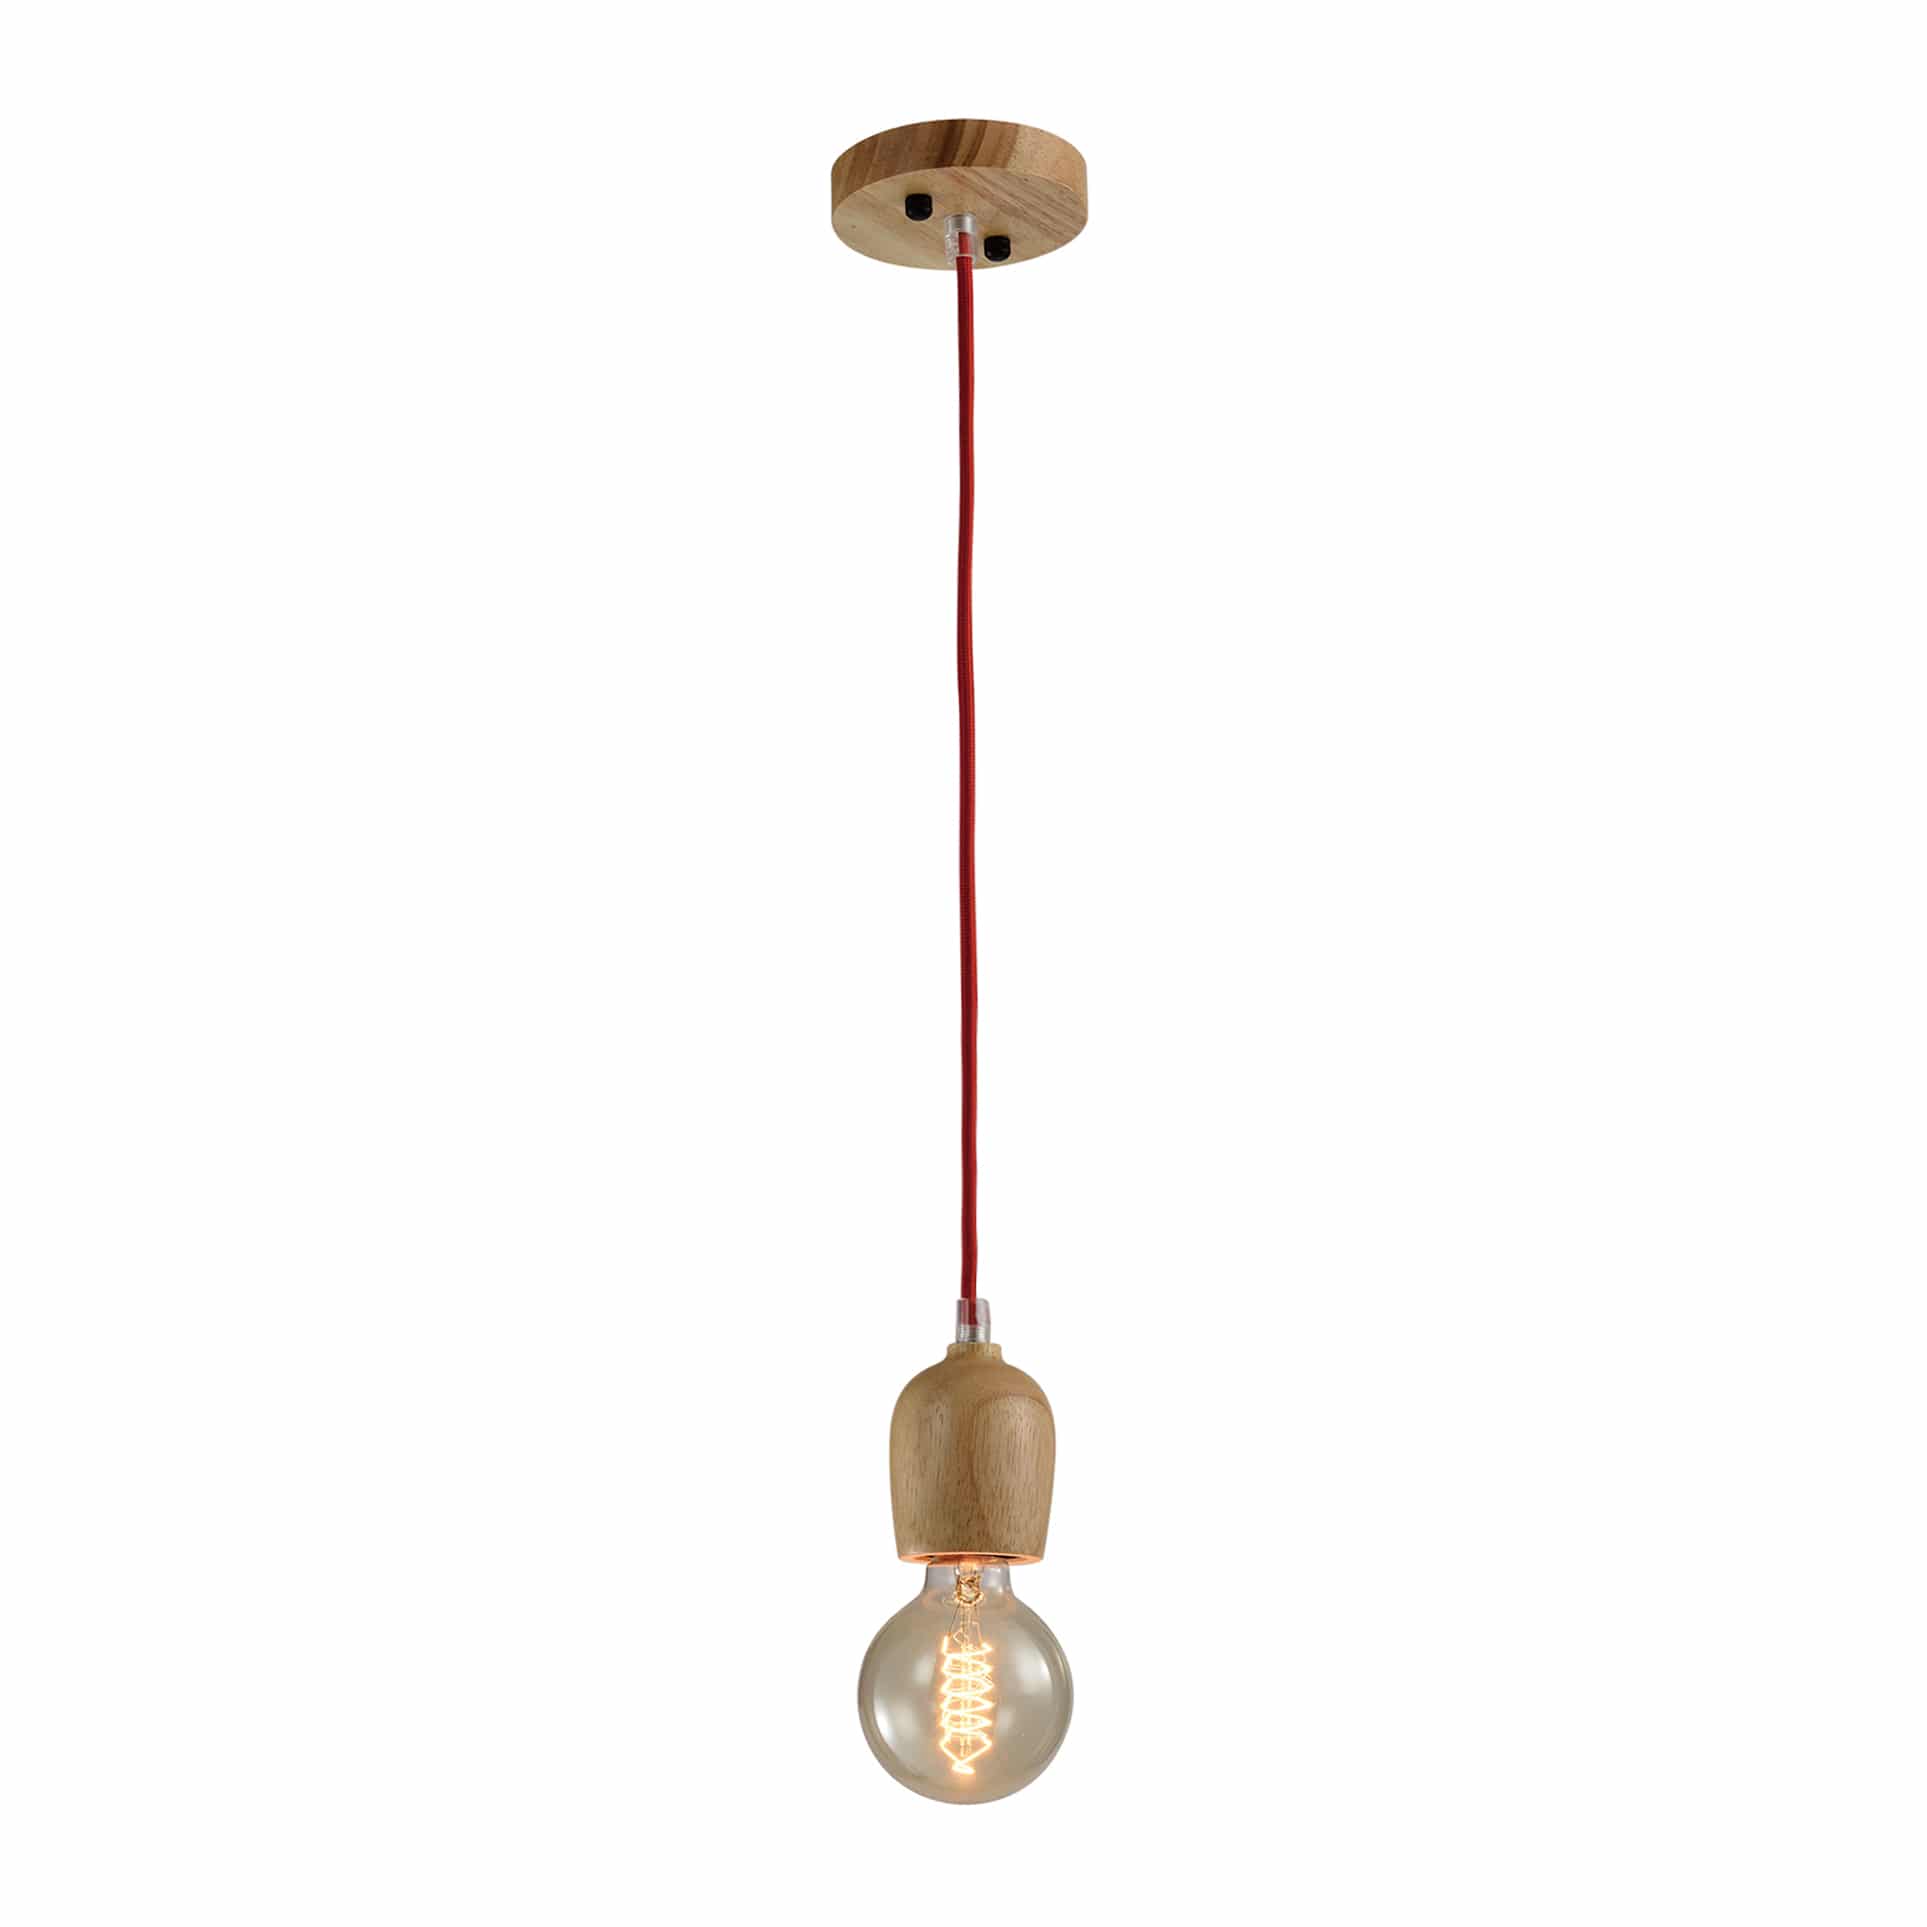 QUVIO Hanglamp retro - Houten pendel met rood snoer - Diameter 6 cm